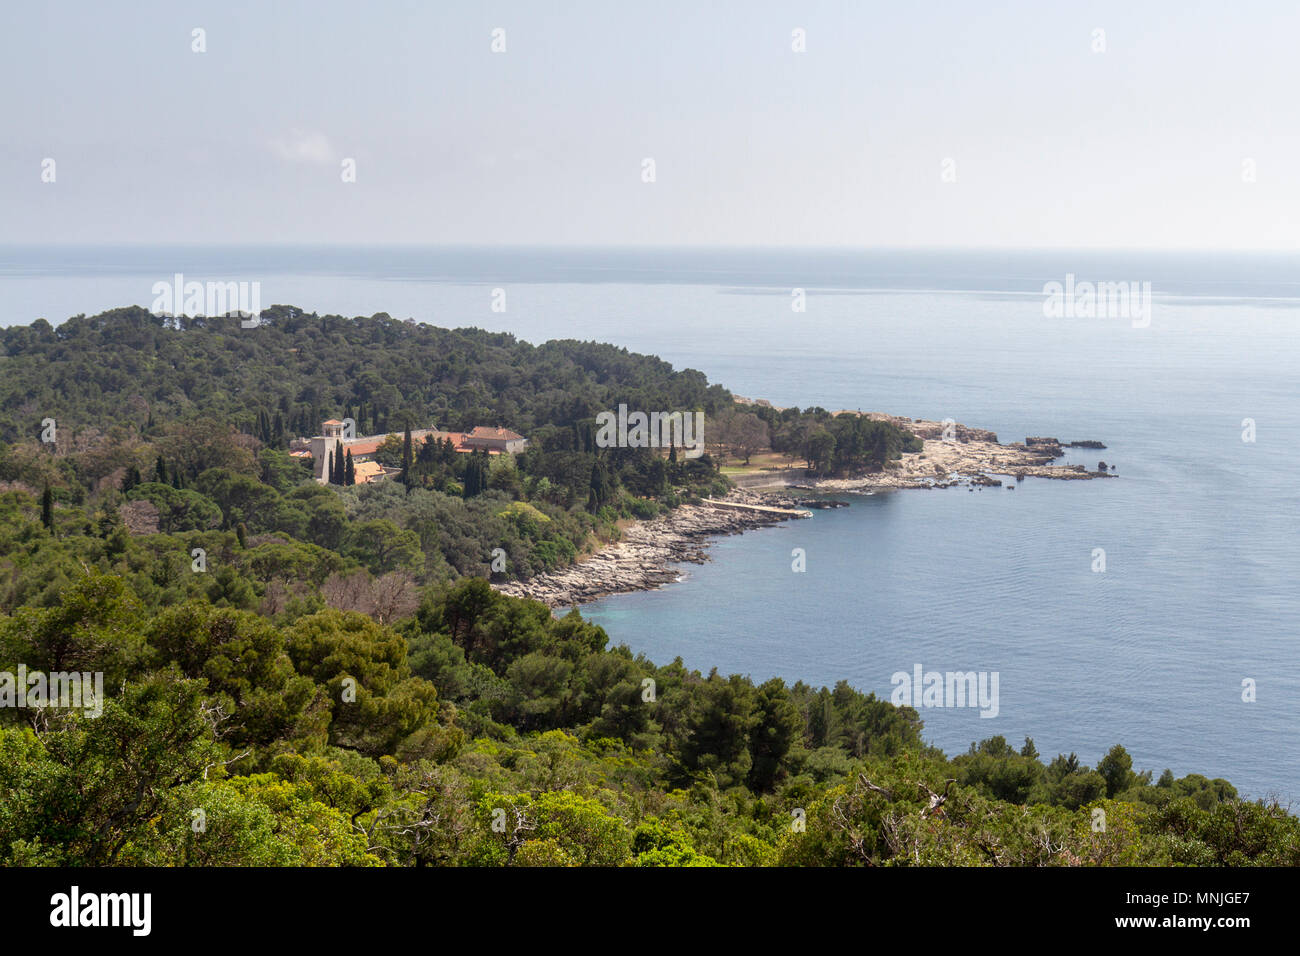 Vue depuis le fort Royal sur la partie sud de l'île de Lokrum, dans la mer Adriatique au large de Dubrovnik, Croatie. Banque D'Images